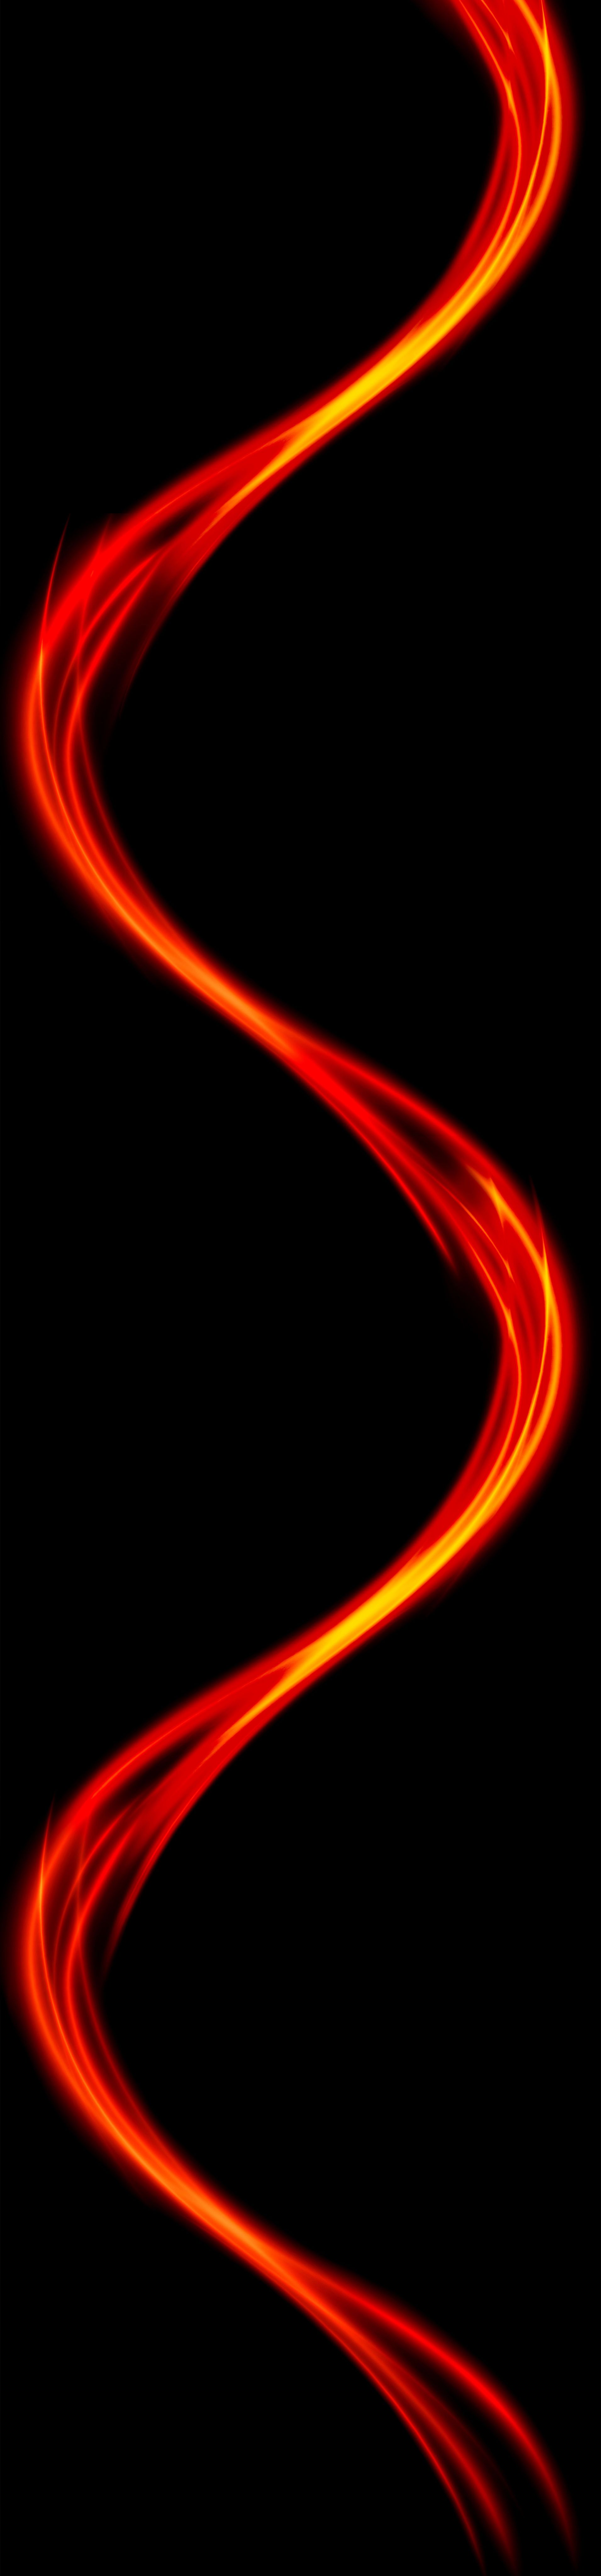 Fond noir avec faisceau lumineux spiralé rouge et jaune